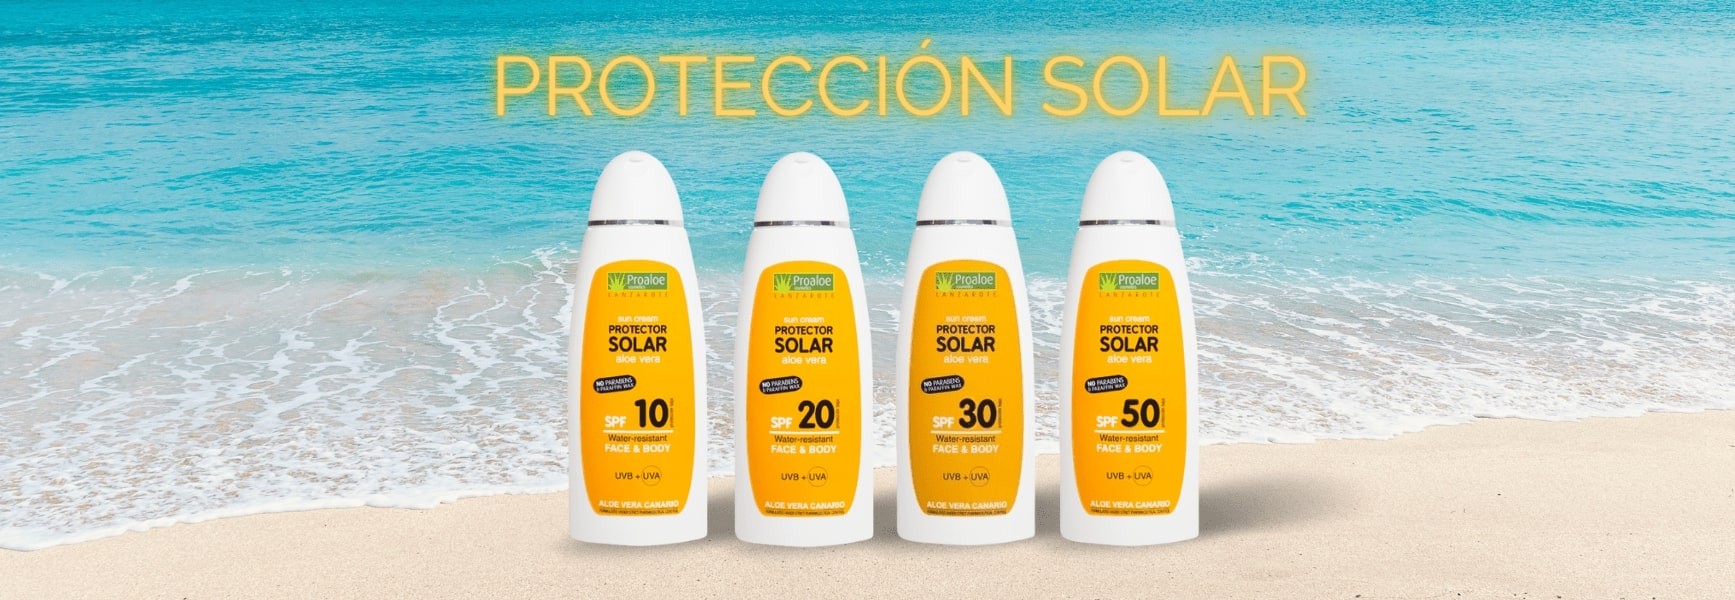 Protección solar con Aloe Vera 100% puro y natural procedente de las Islas Canarias